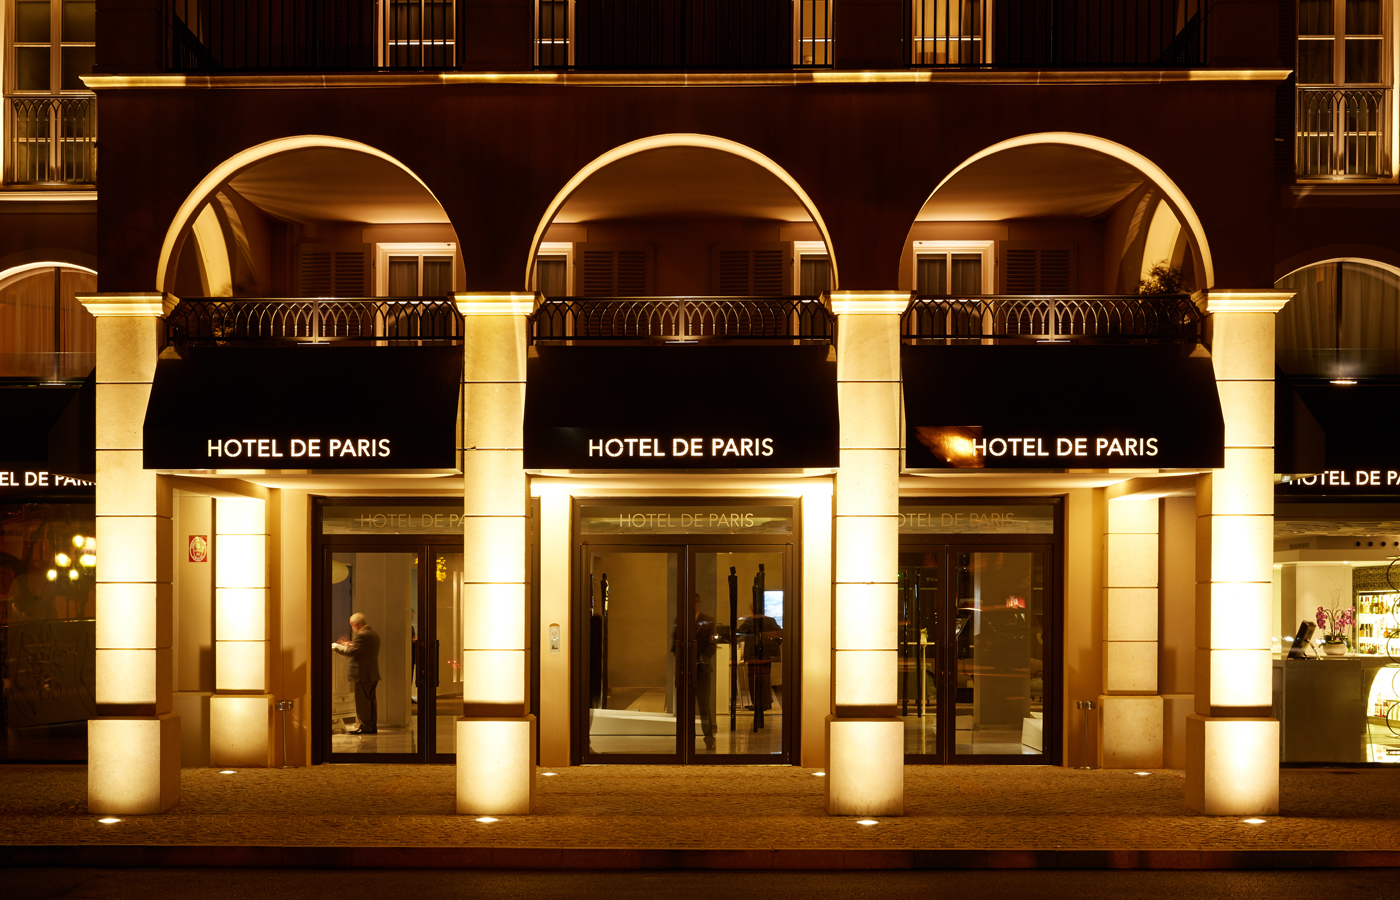 Hotel de Paris - St Tropez Luxury